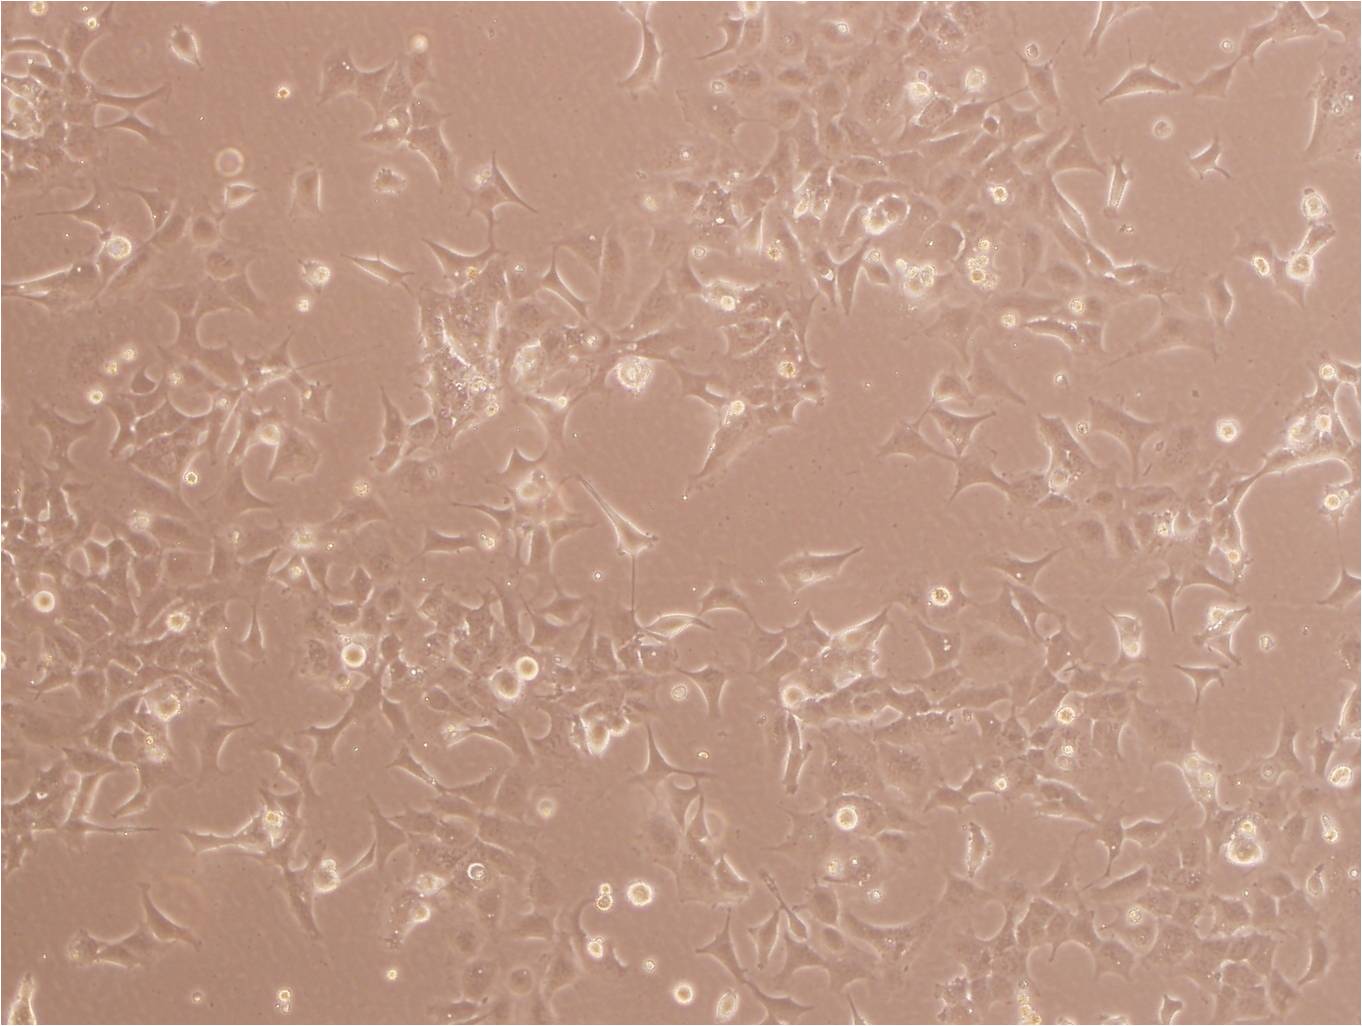 PIG1 Cells|正常人皮肤黑色素细胞系,PIG1 Cells